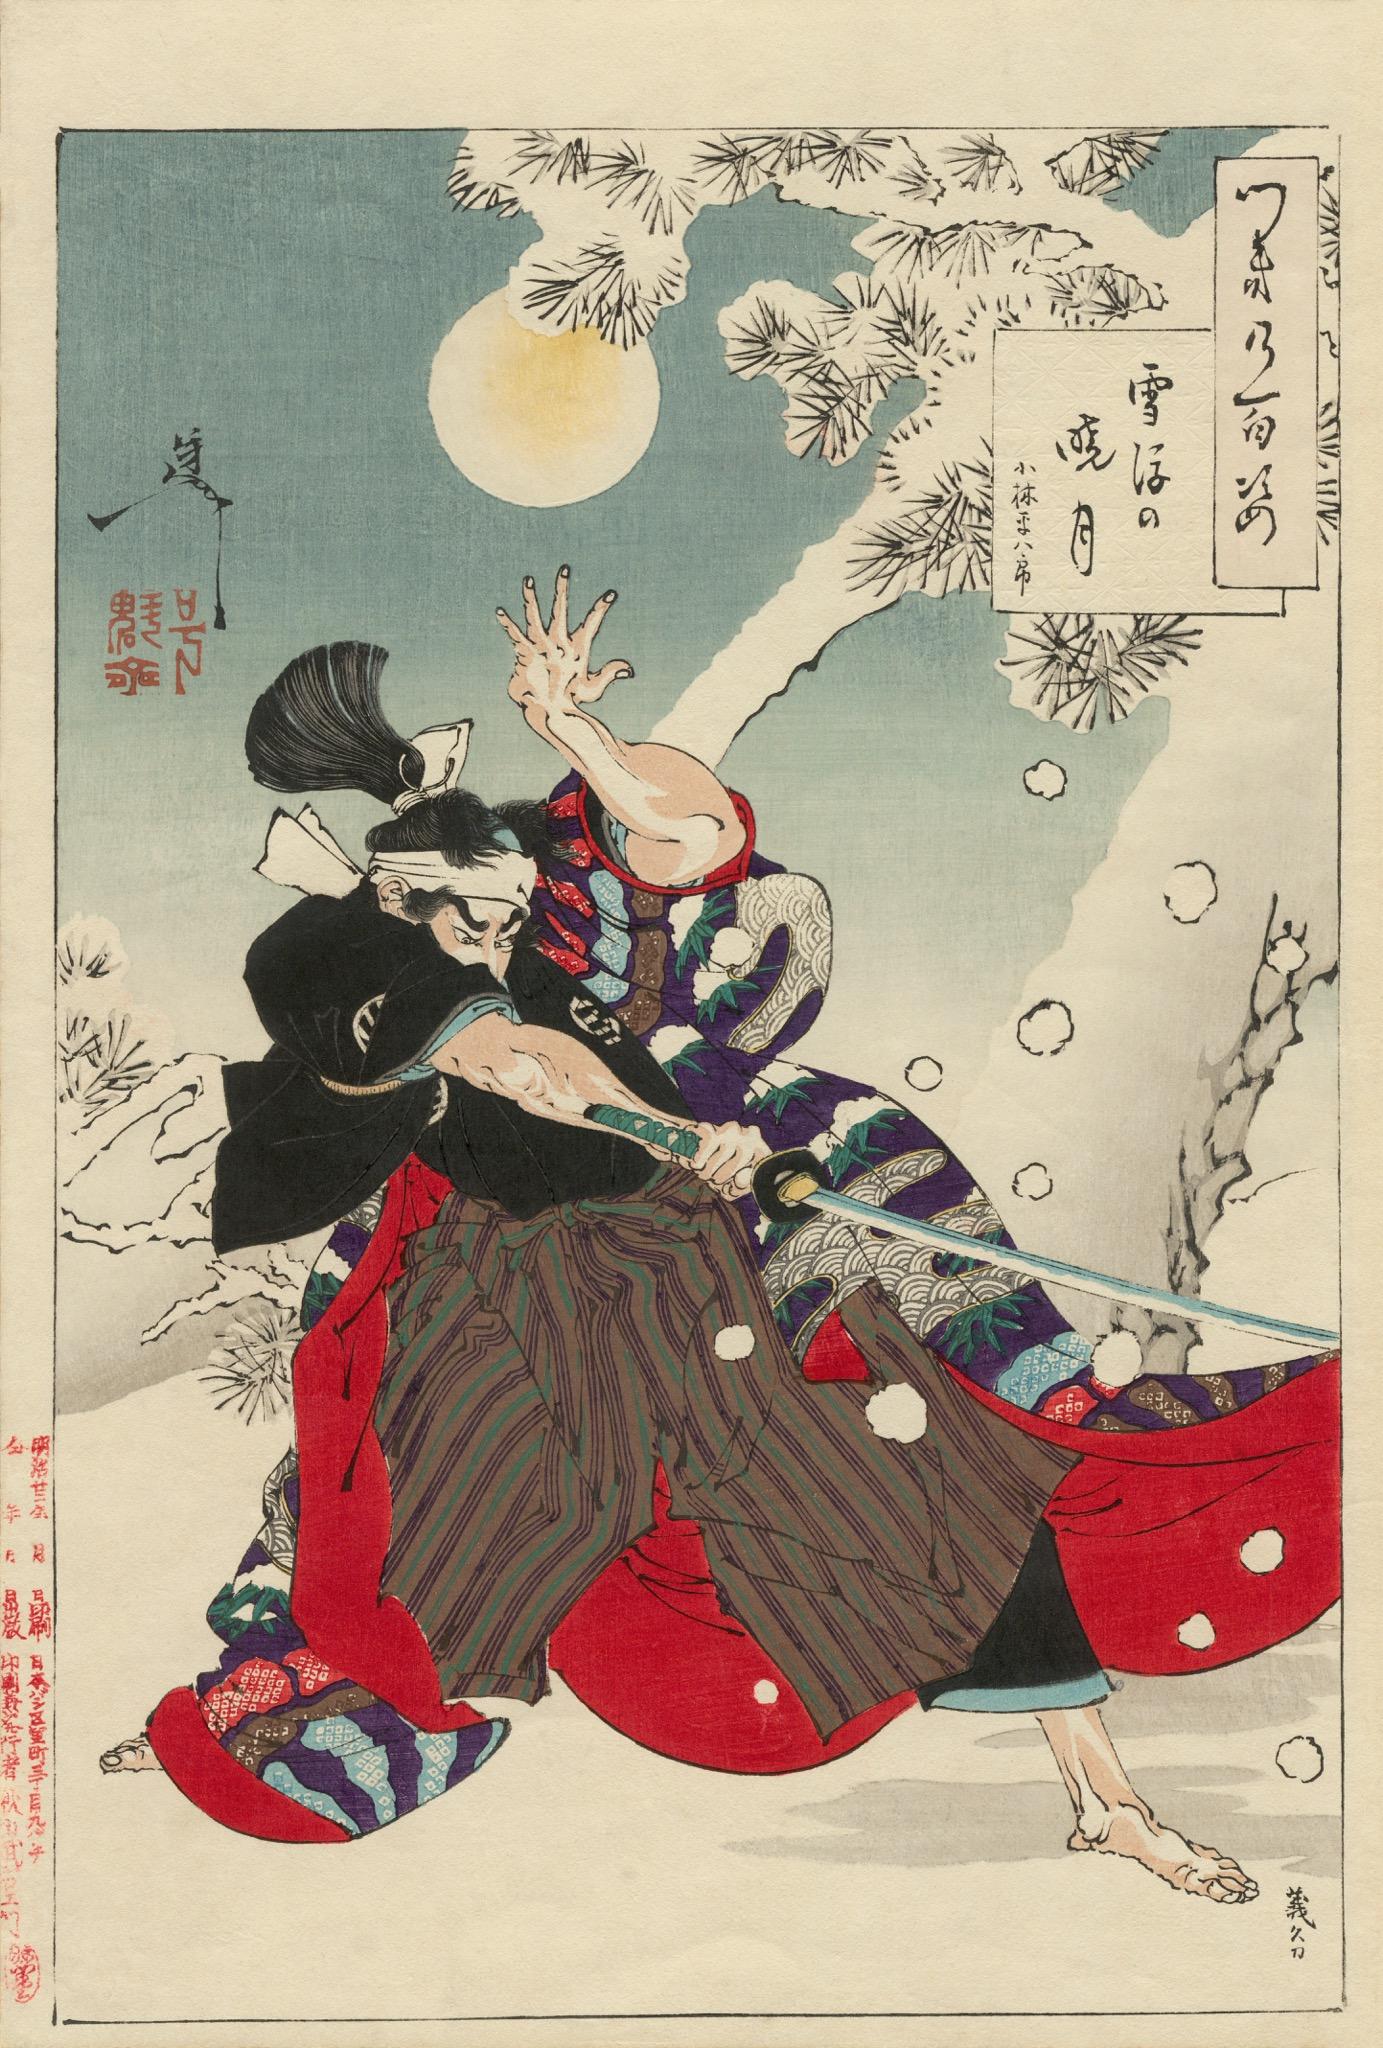 Dies ist ein Original-Holzschnitt von Yoshitoshi aus dem Jahr 1886.

Dies ist ein japanisches Ukiyo-e (Holzschnitt) aus der Meiji-Ära. Es stammt aus der Serie 